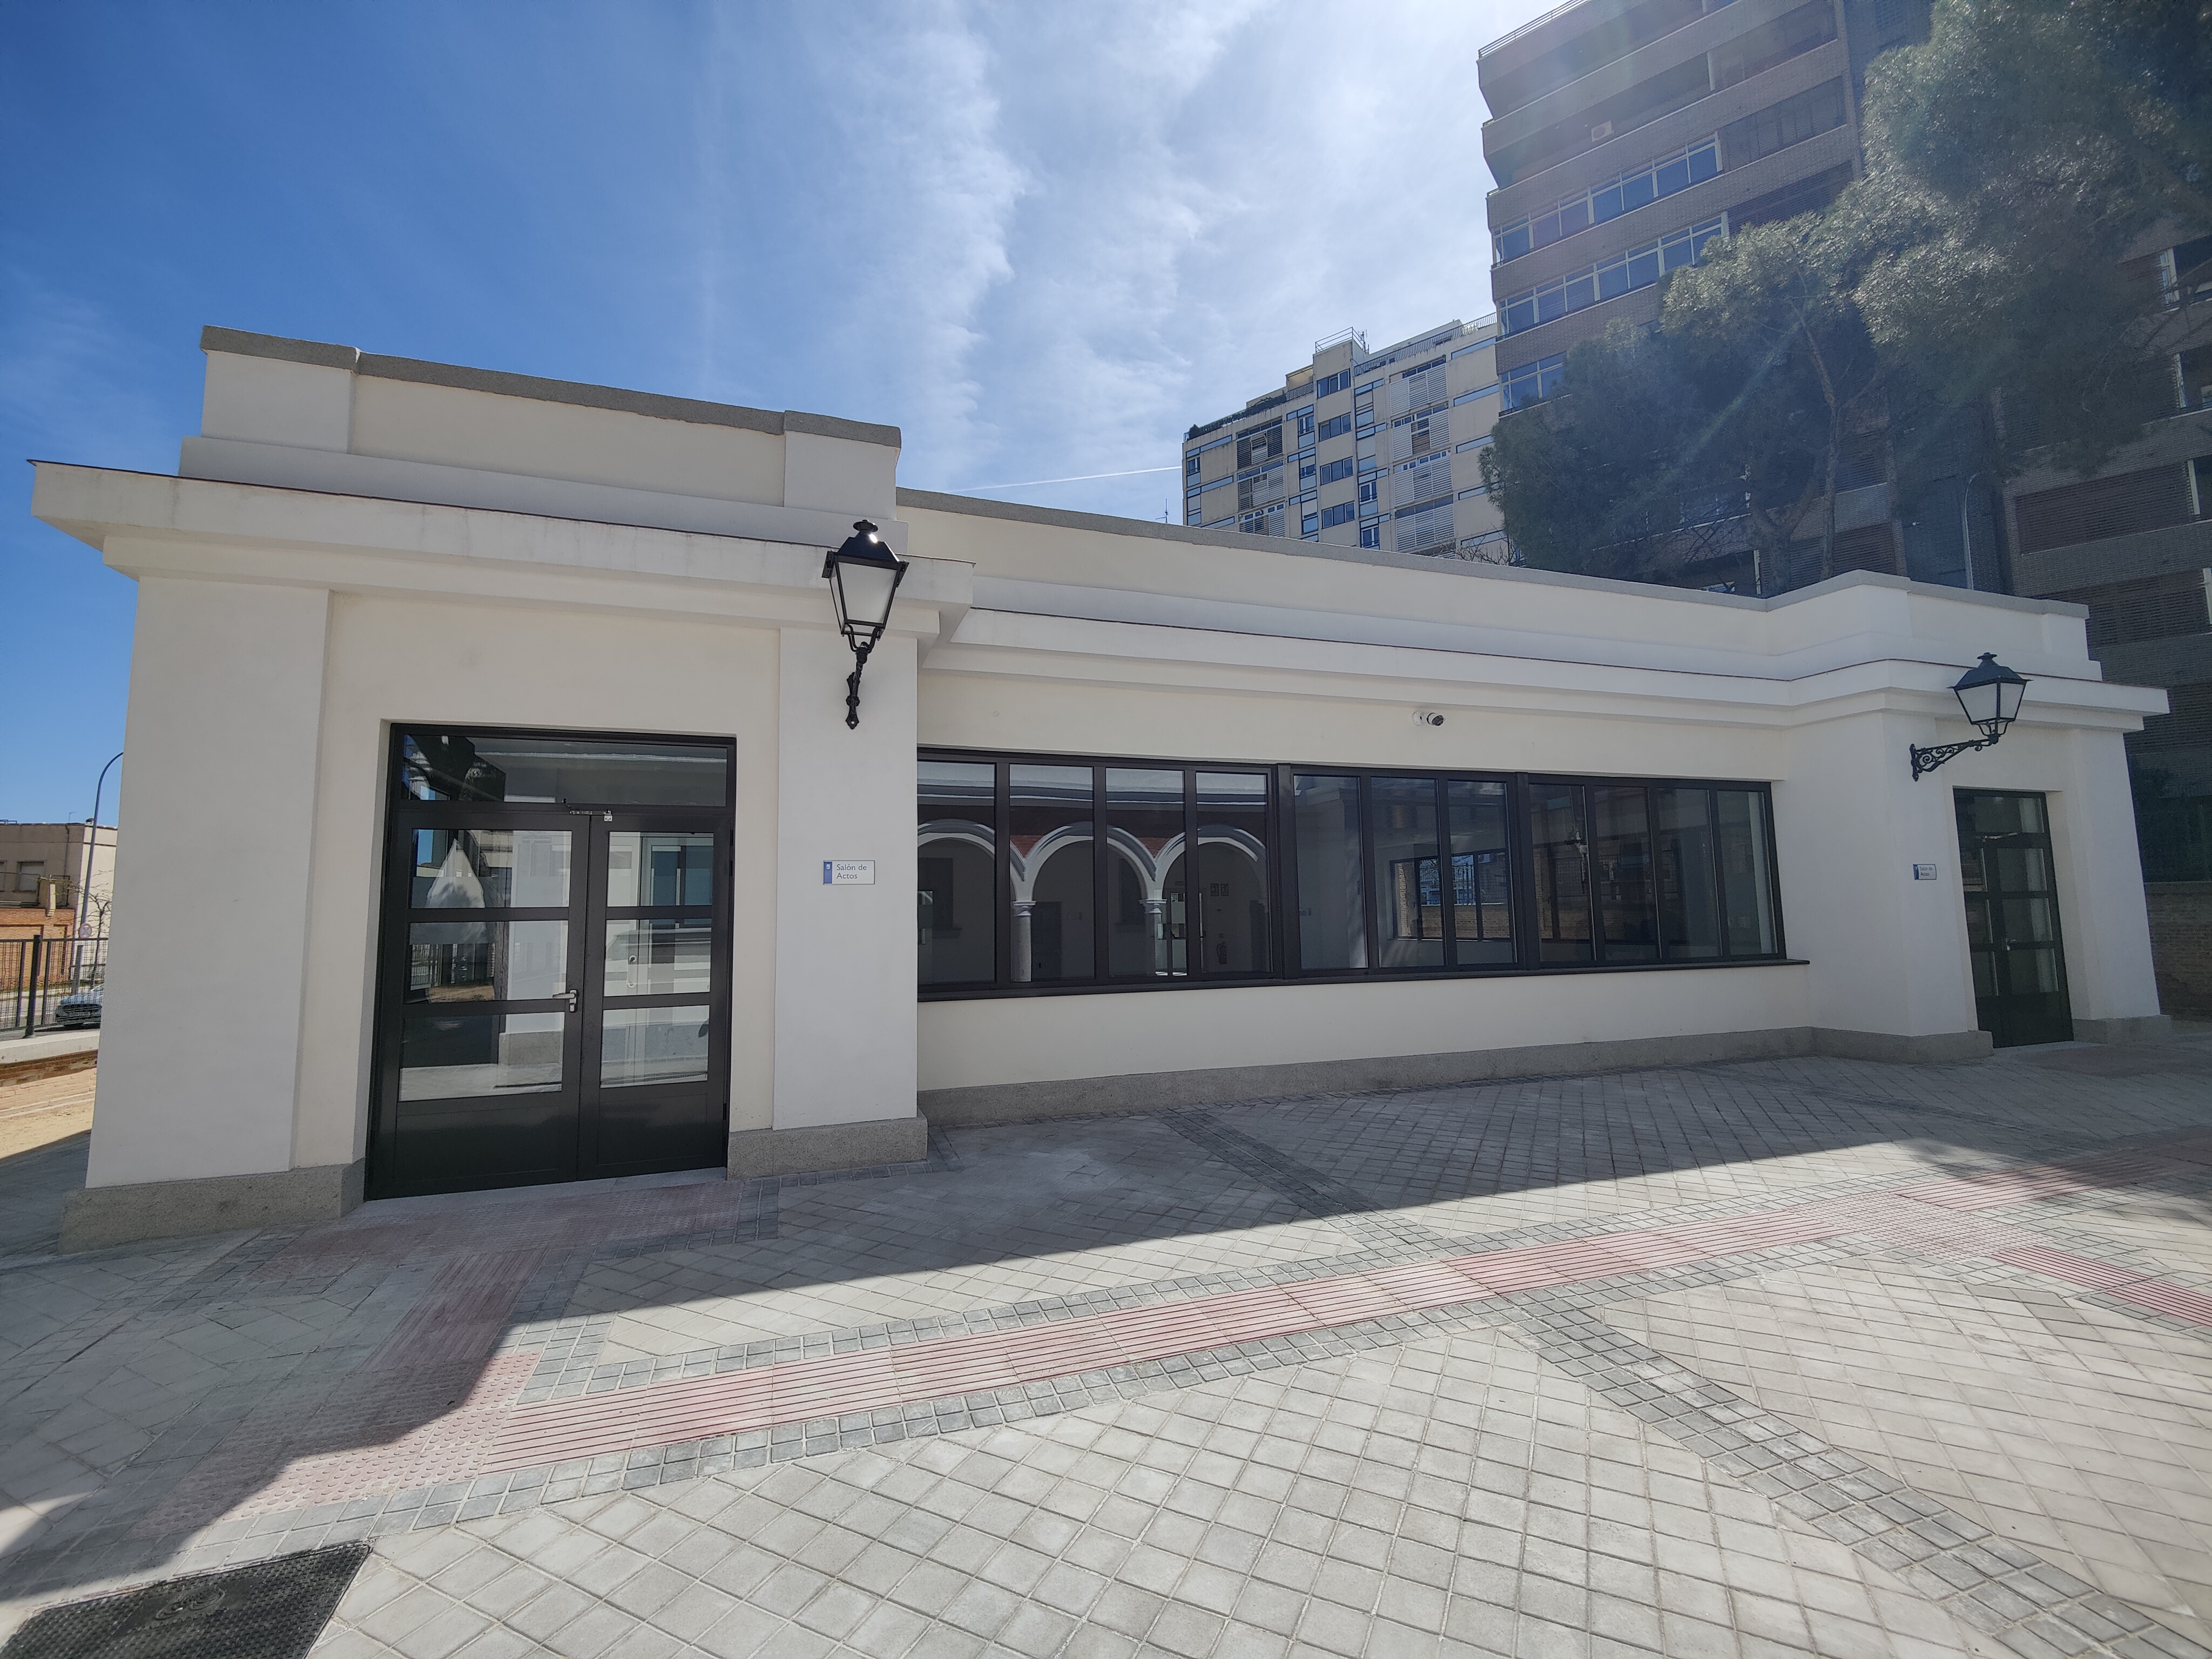 El edificio de Francos Rodríguez, recién remodelado, que albergará la JMD Moncloa-Aravaca